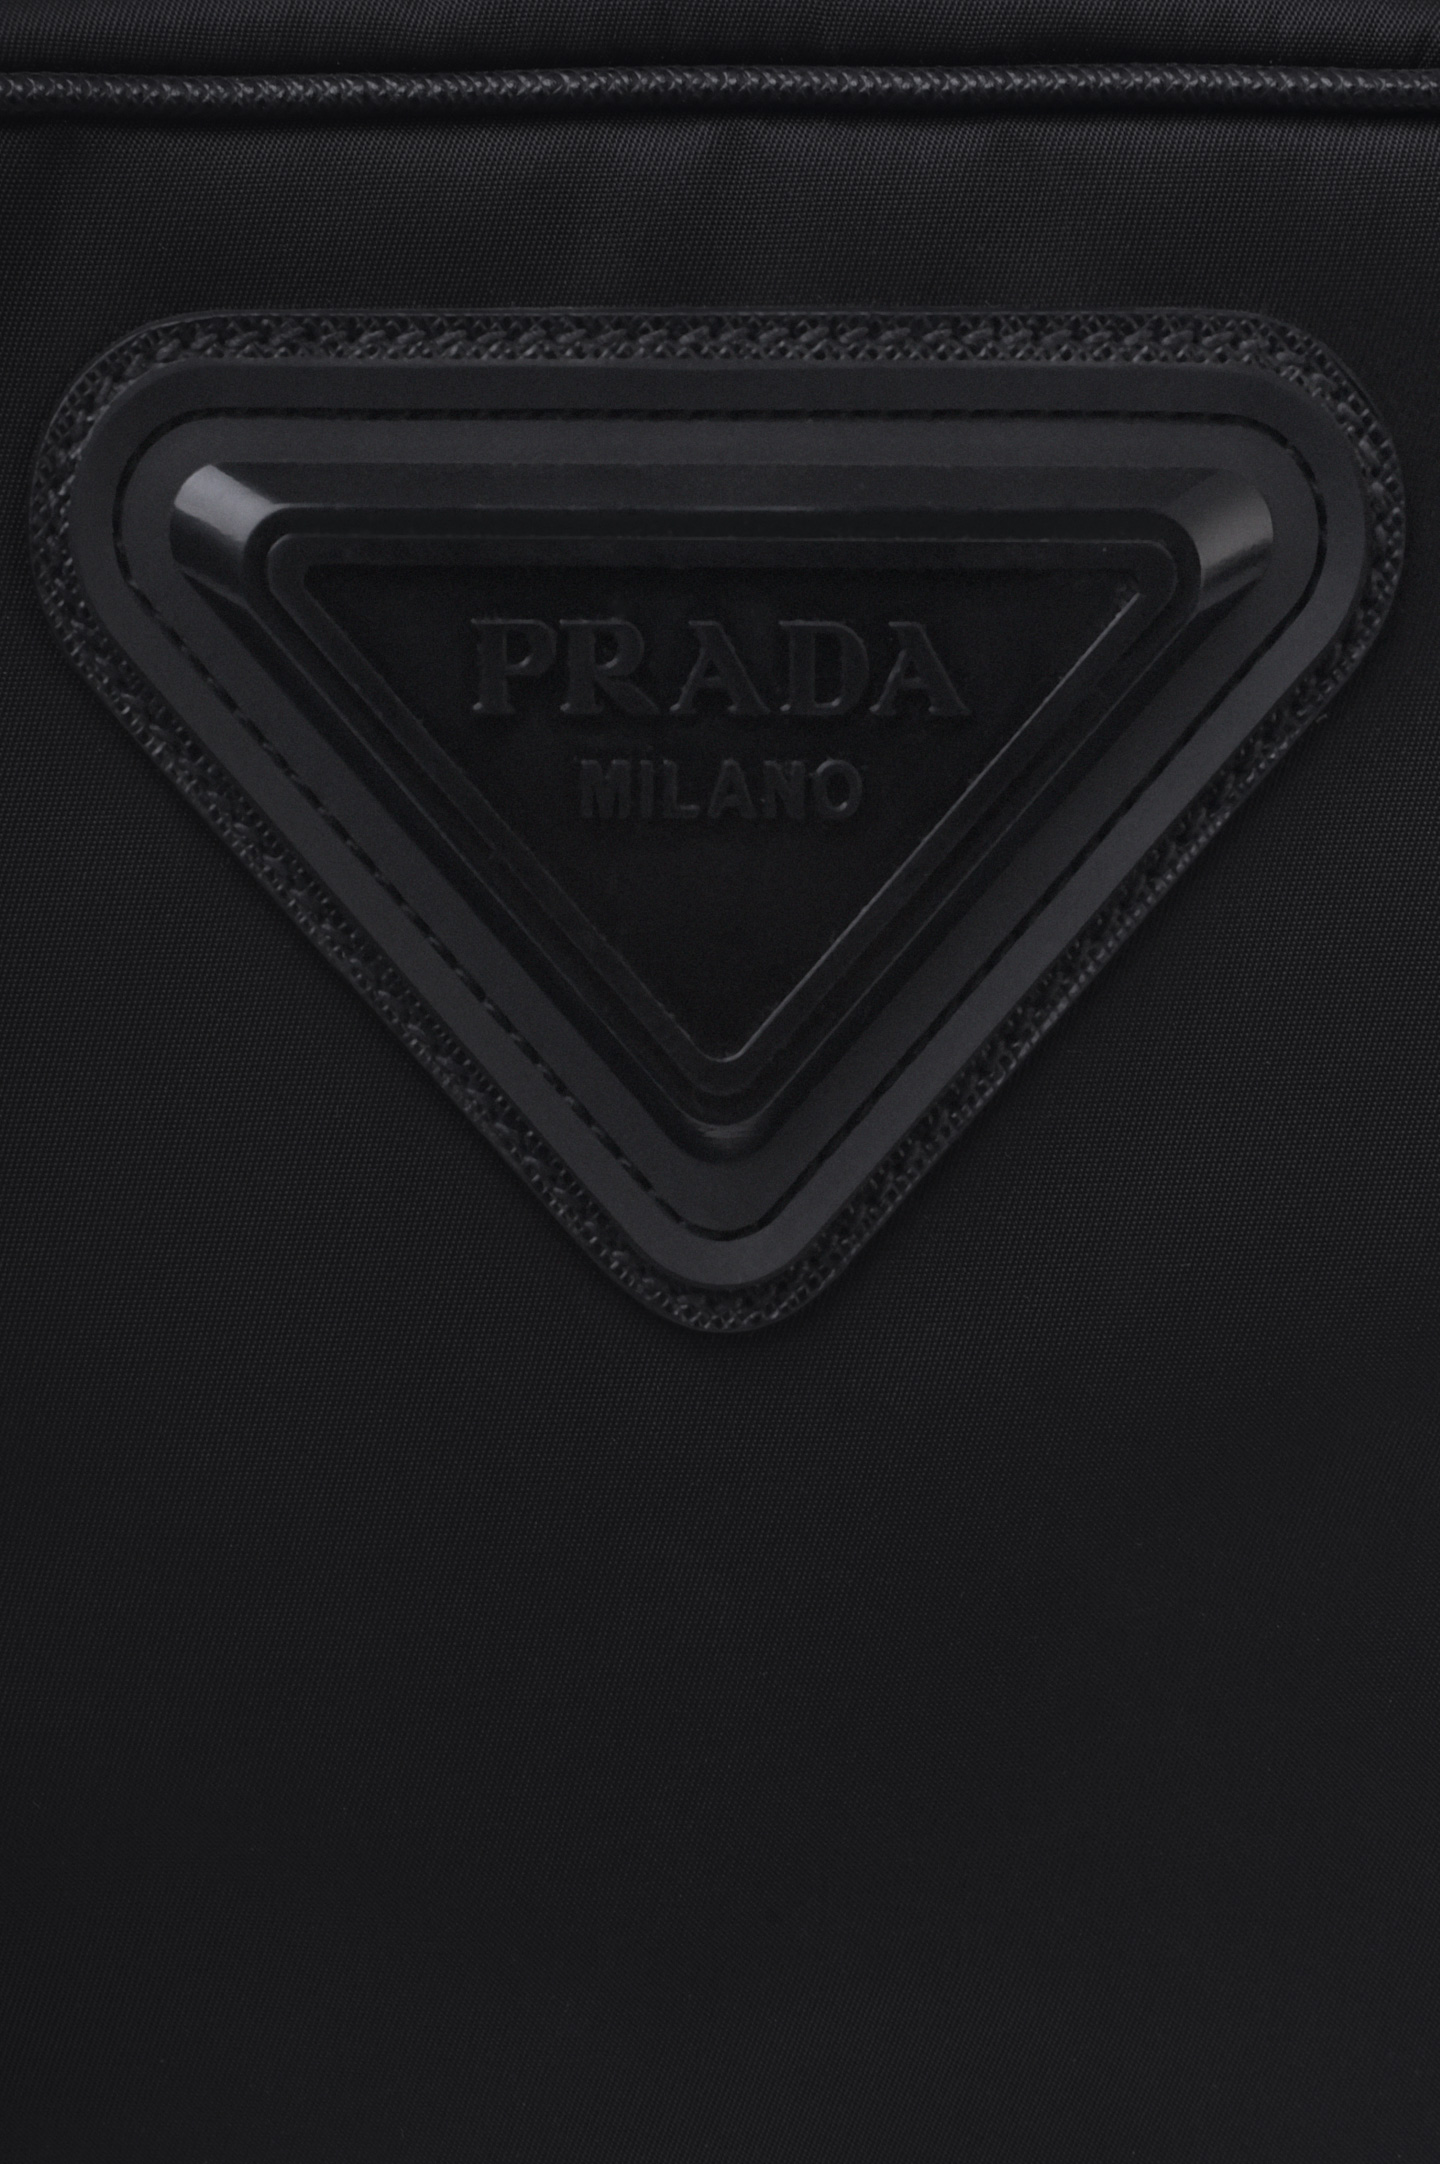 Сумка PRADA 2VH112 V OAO, цвет: Черный, Мужской